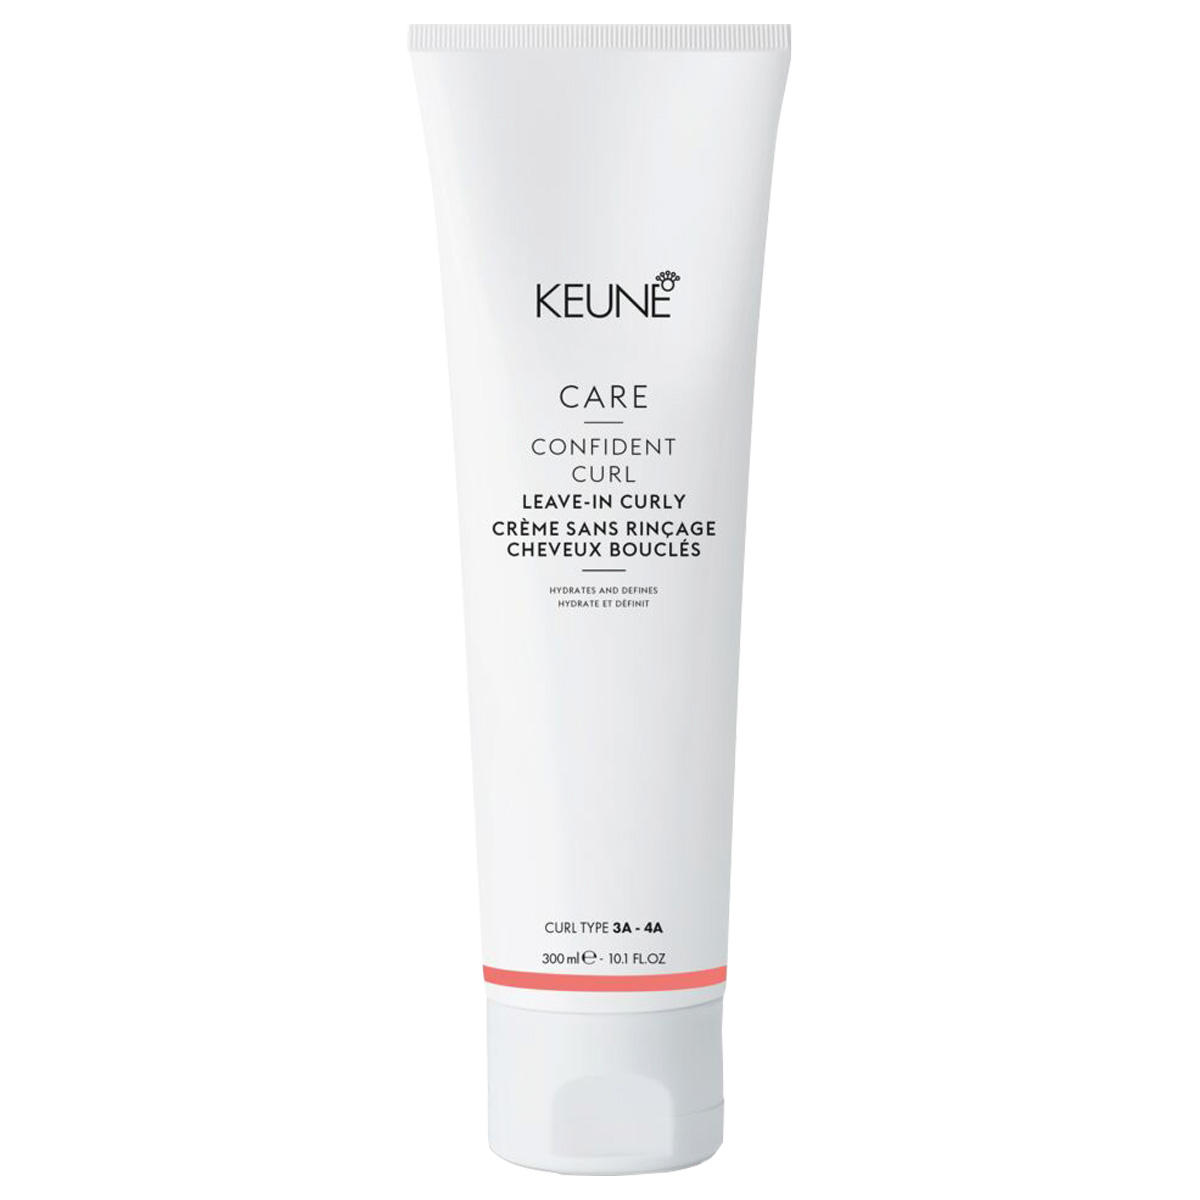 KEUNE CARE Confident Curl Leave-In Curly 300 ml - 1